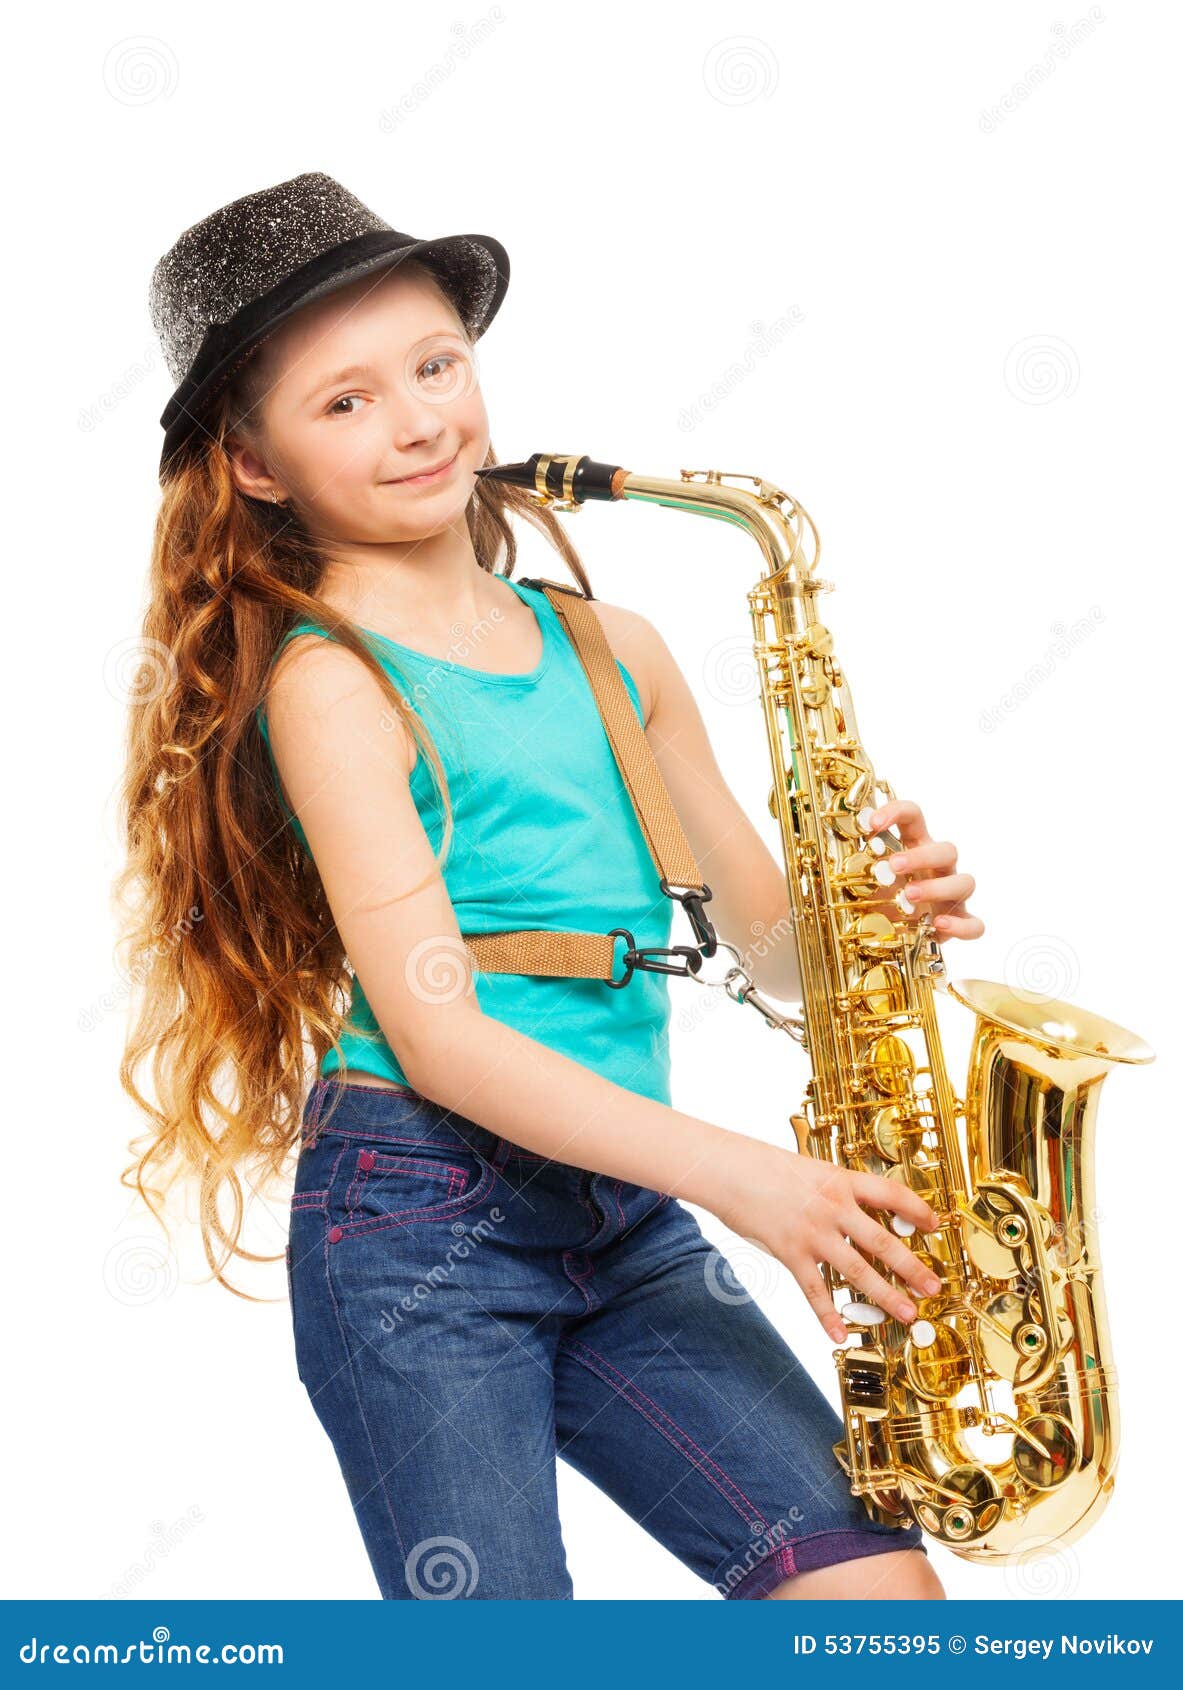 Танец с саксофонами в детском. Девочка играет на саксофоне. Девочка с саксофоном. Ребенок играет на саксофоне. Фото девочка маленькая играет на саксофоне.